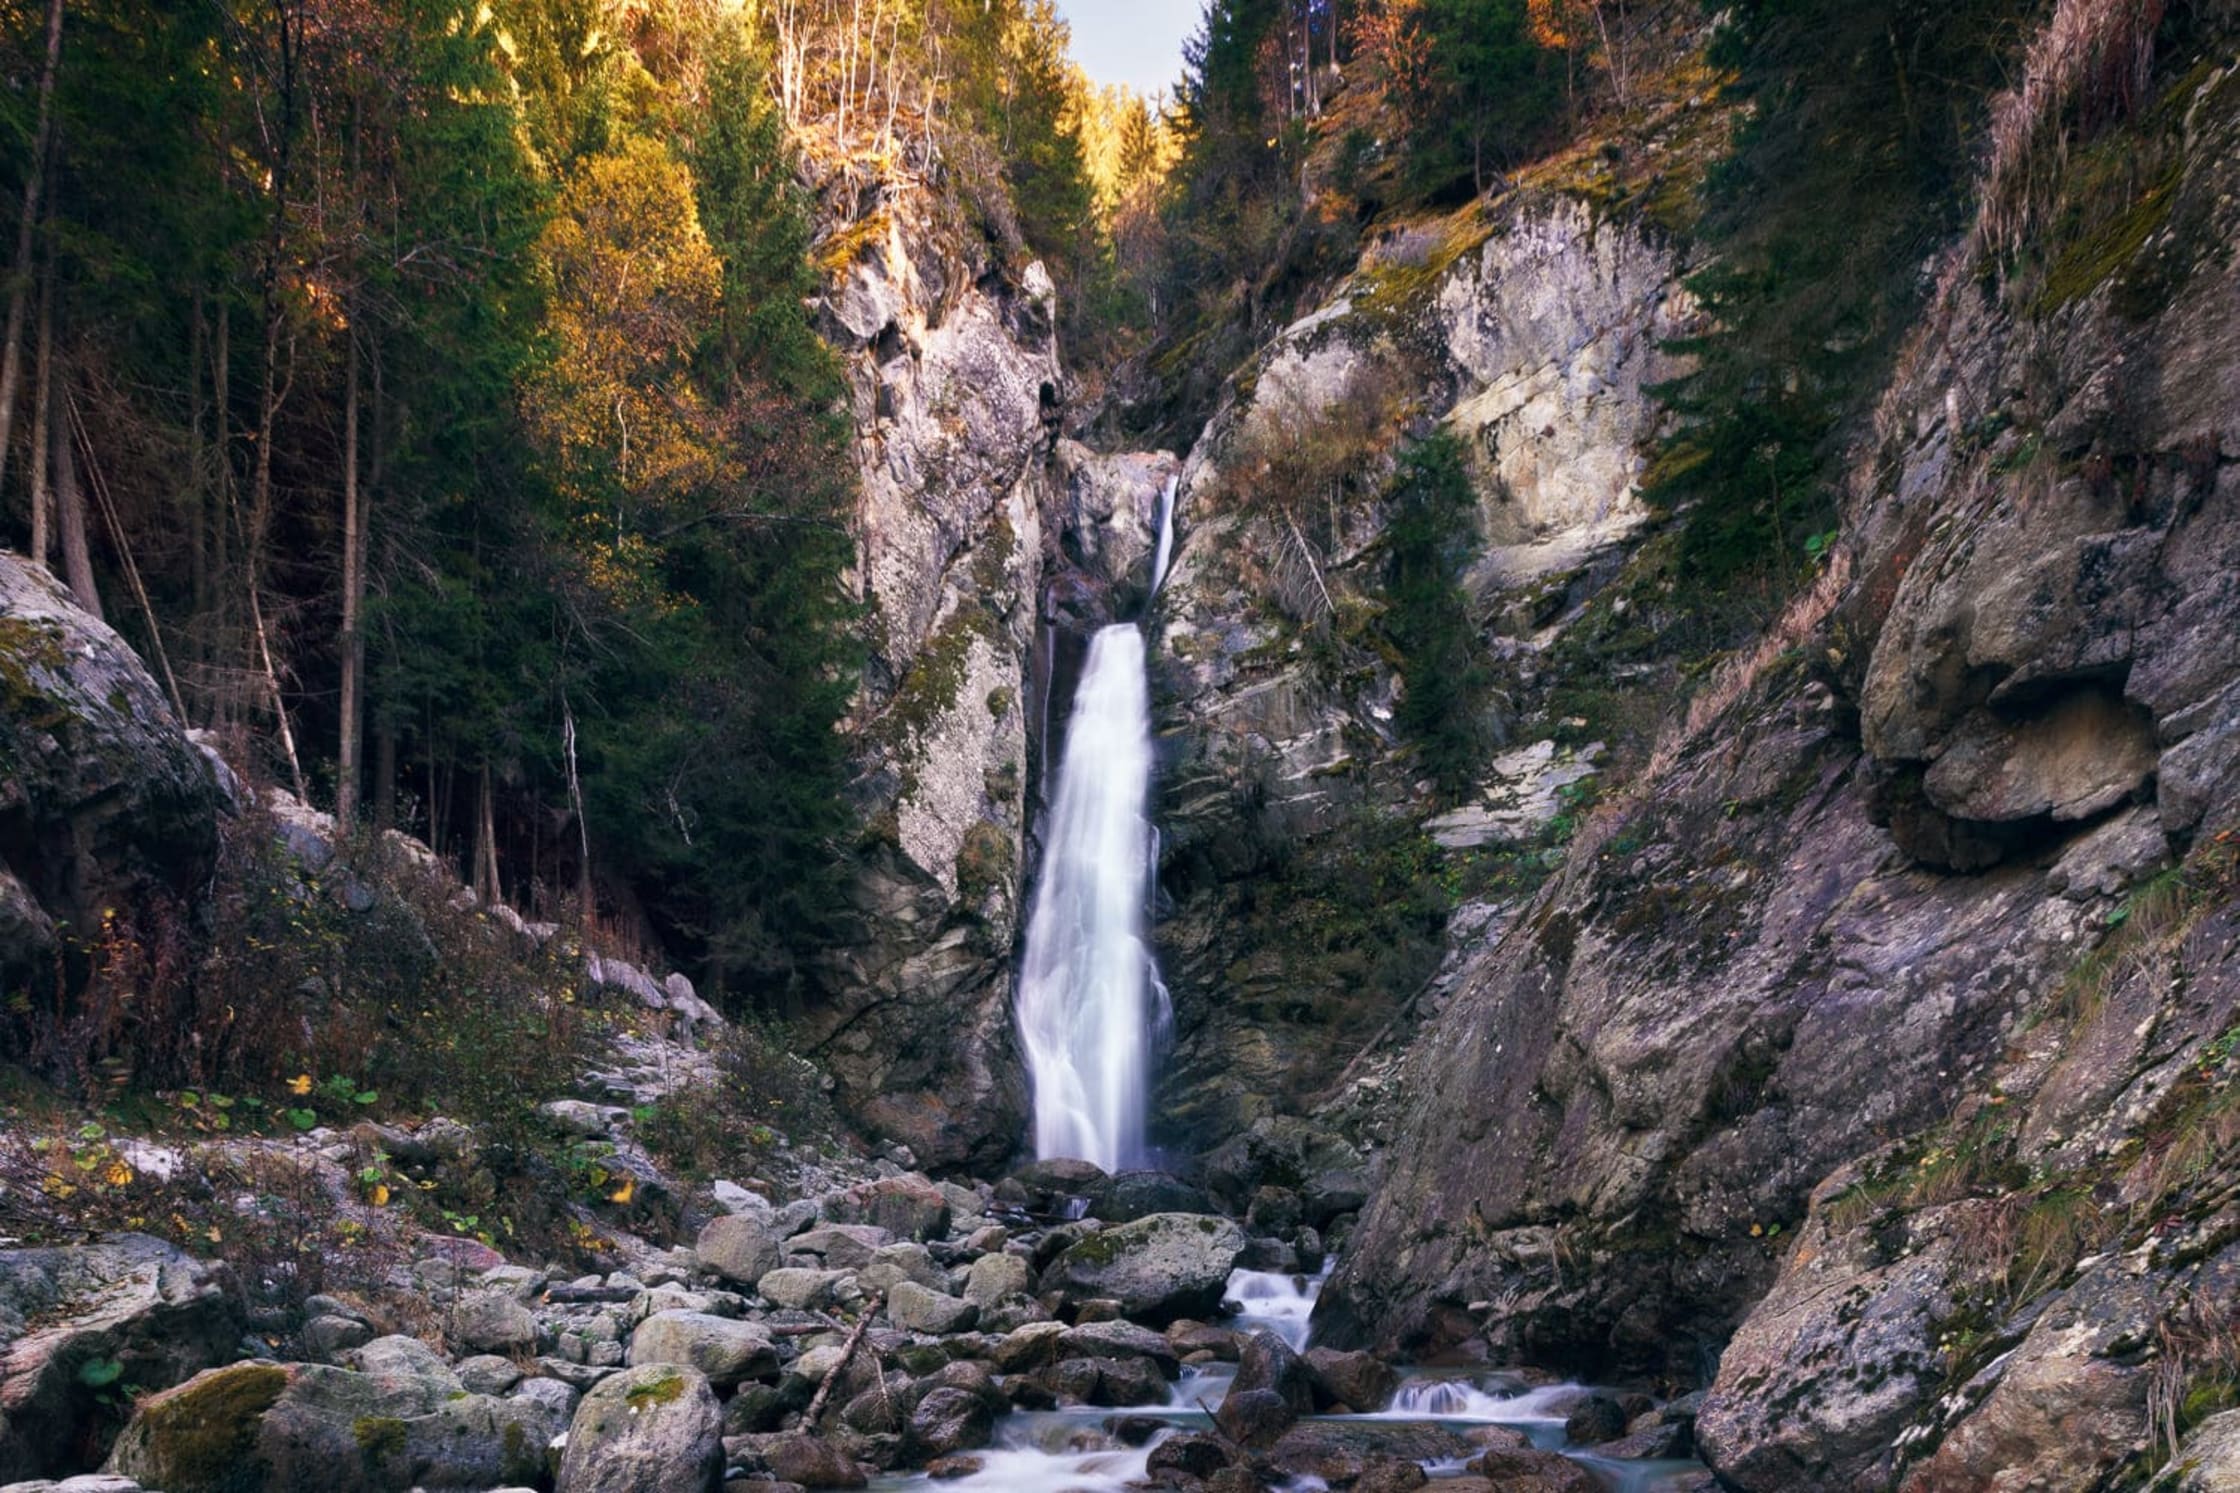 La cascade du Dard en Haute-Savoie, coule au milieu des conifères